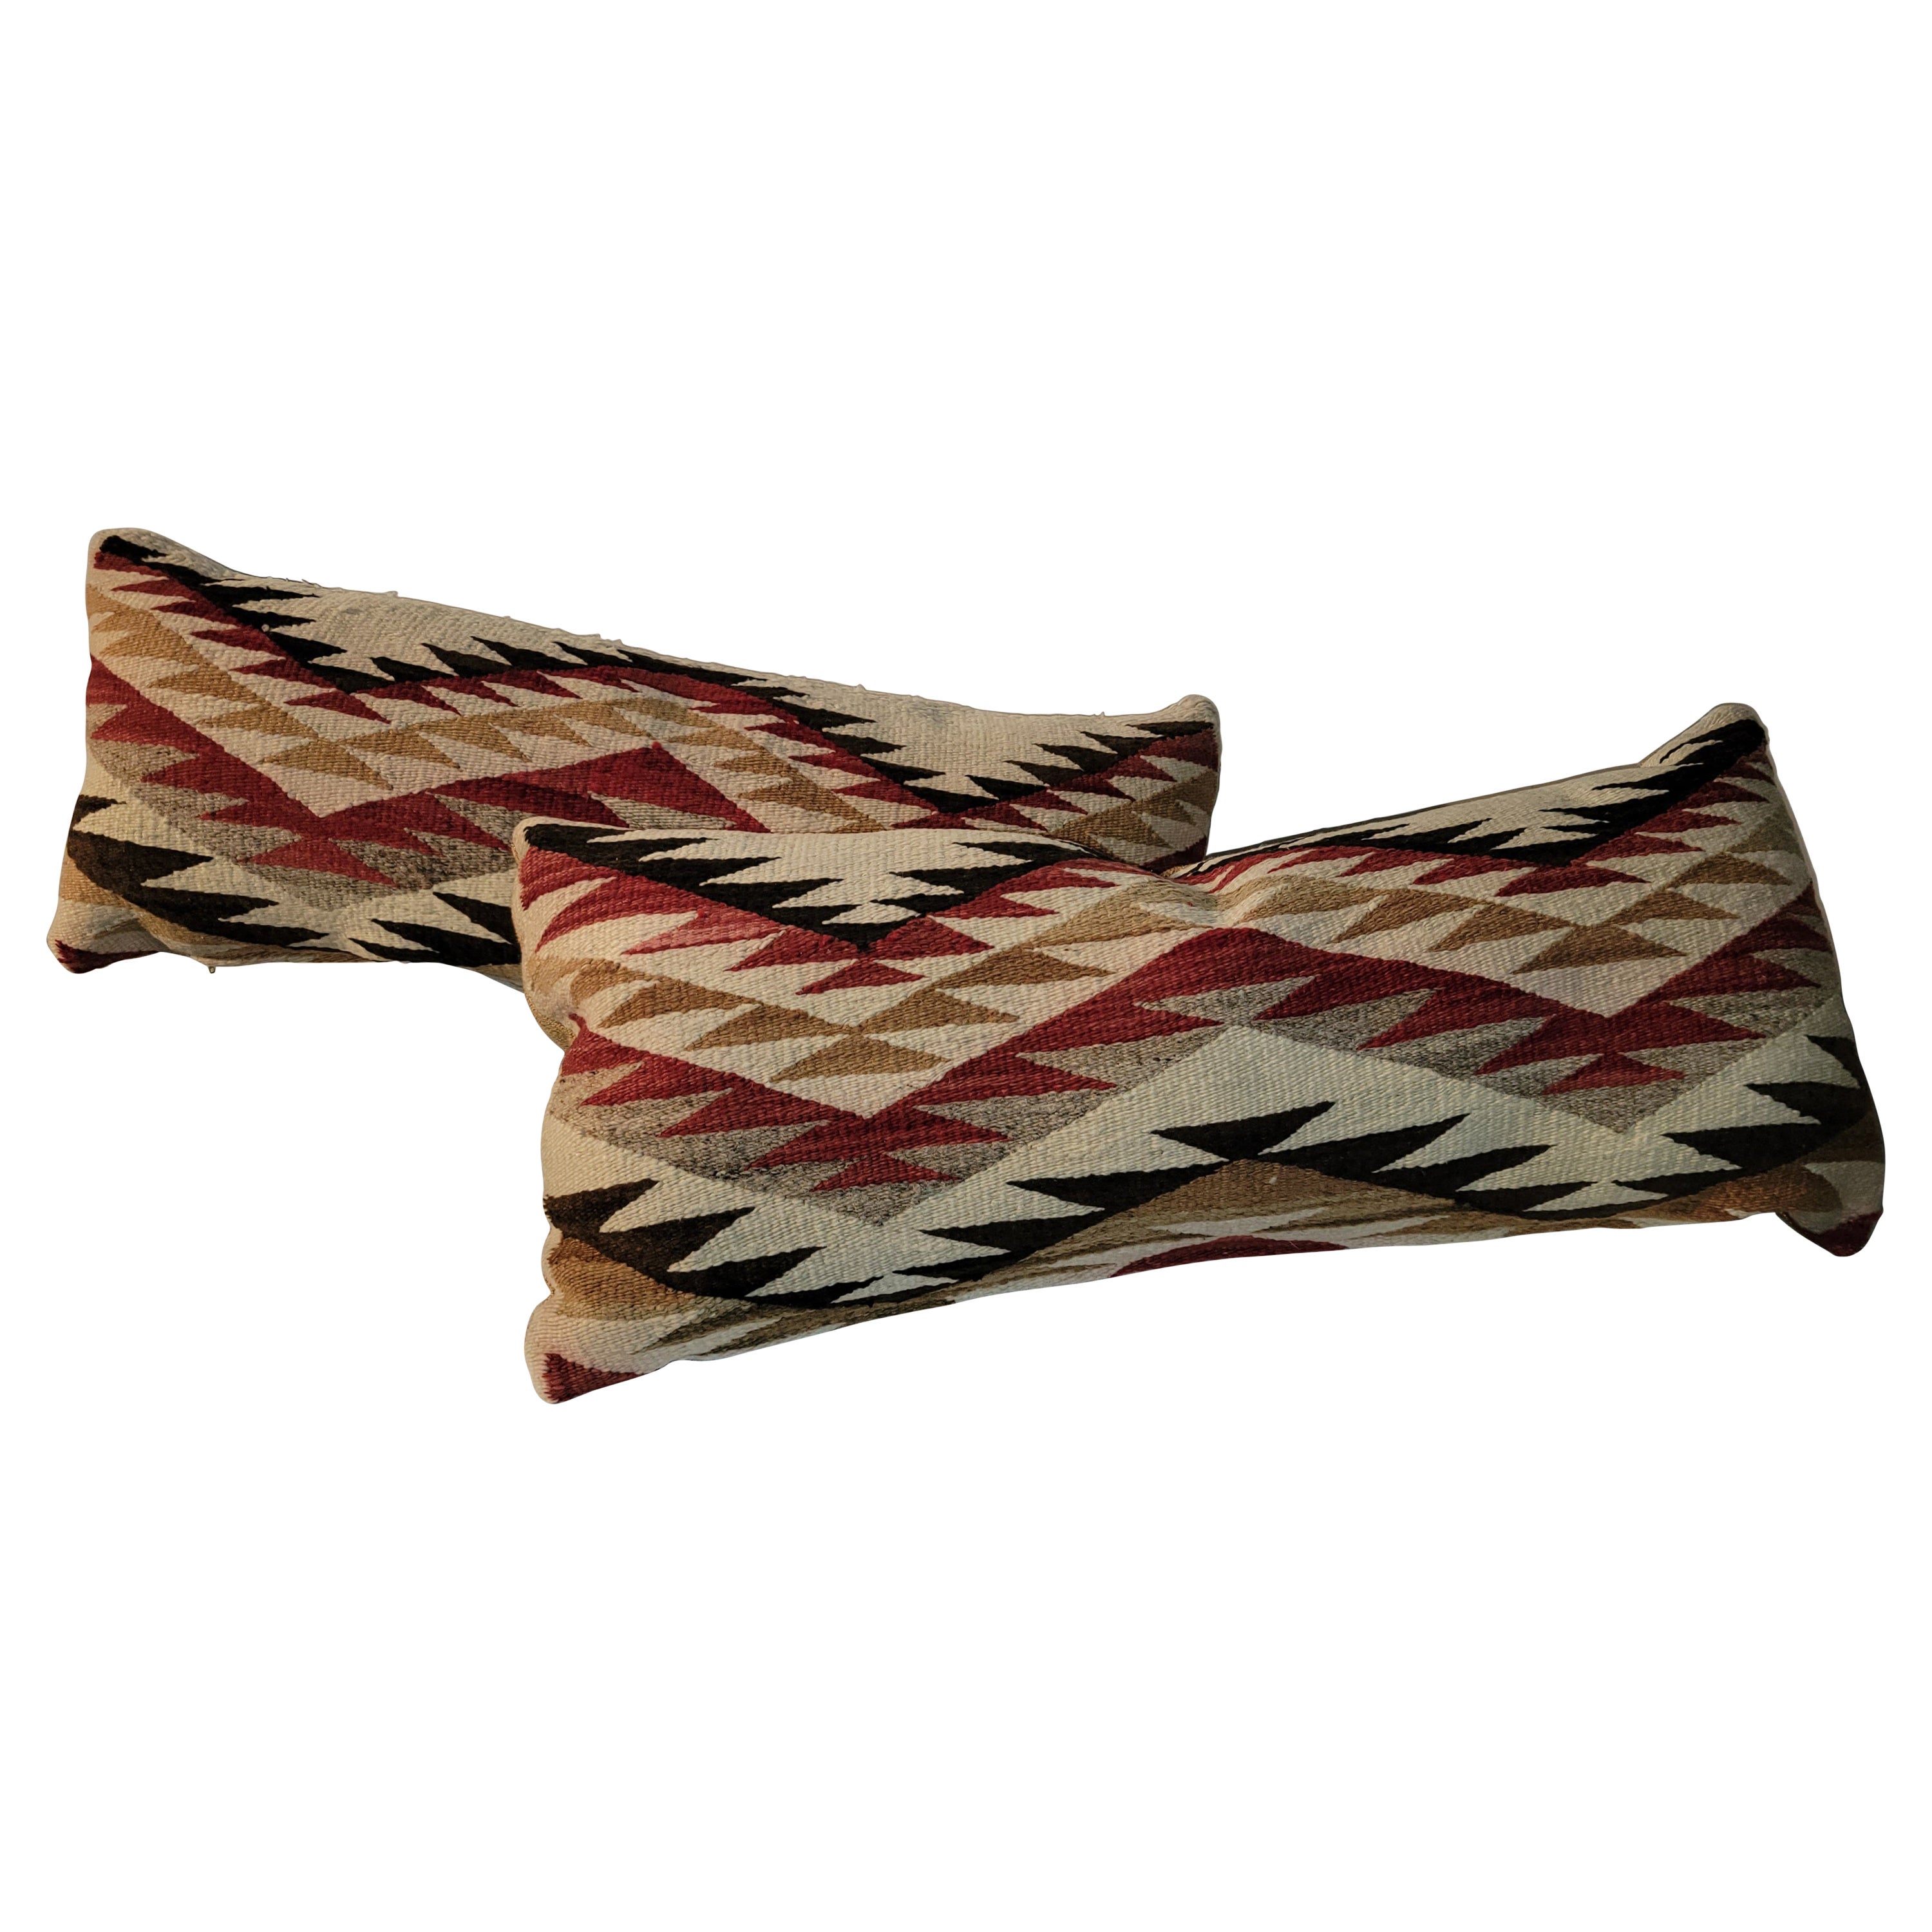 Navajo Indian Weaving Bolster Pillows